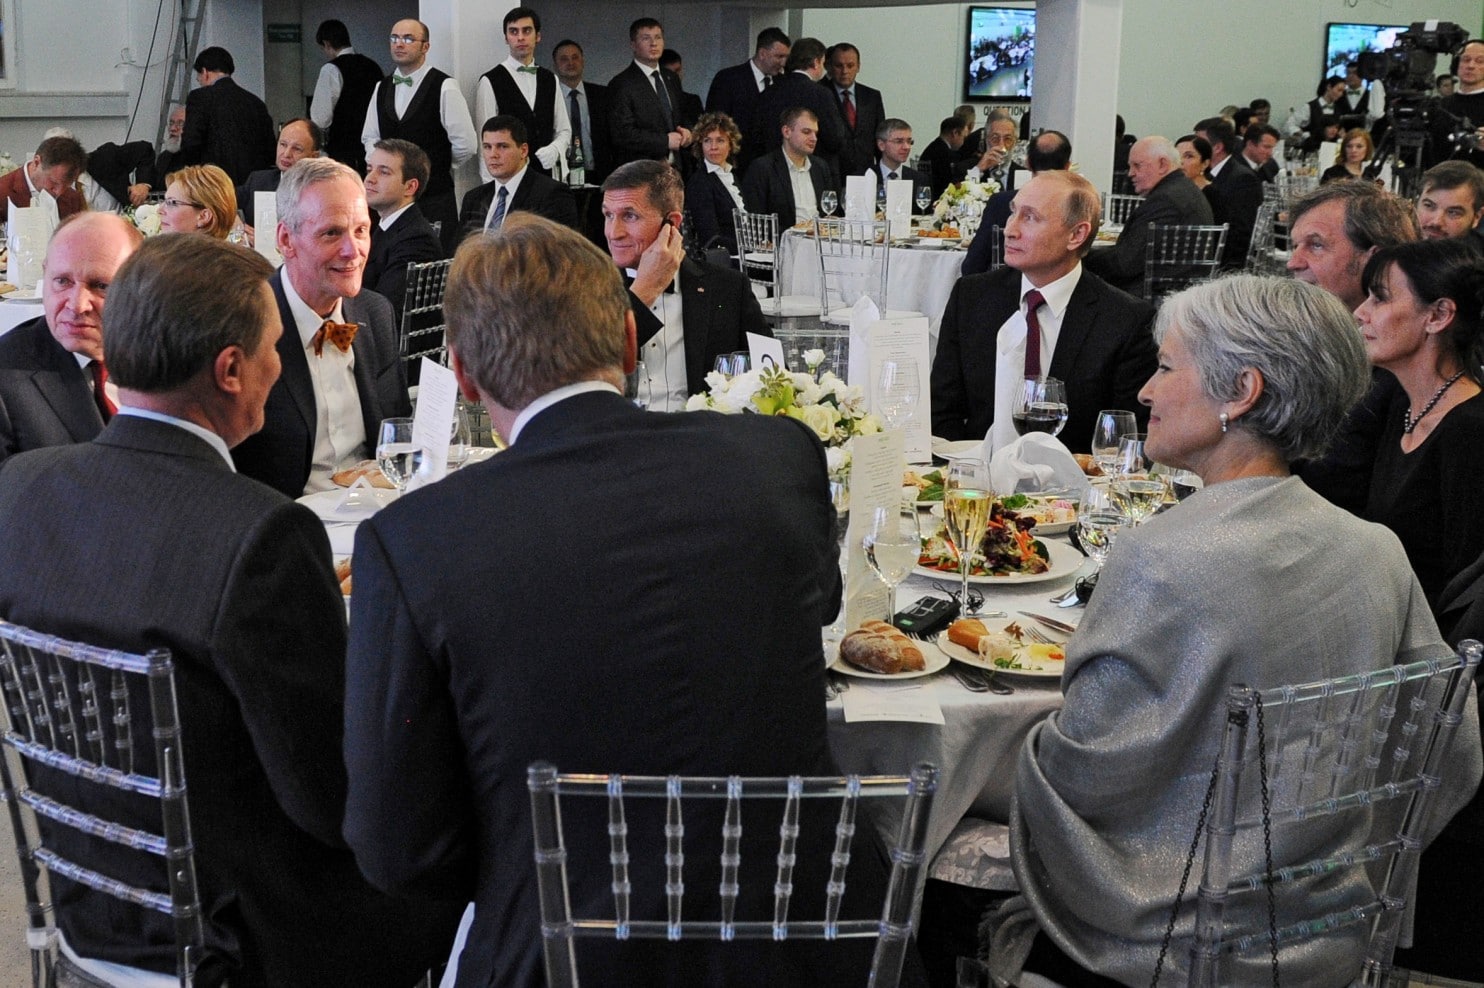 الجنرال فلين جالساً إلى يمين الرئيس بوتين في احتفال بذكرى مرور 10 سنوات على تأسيس تلفزيون "روسيا اليوم".